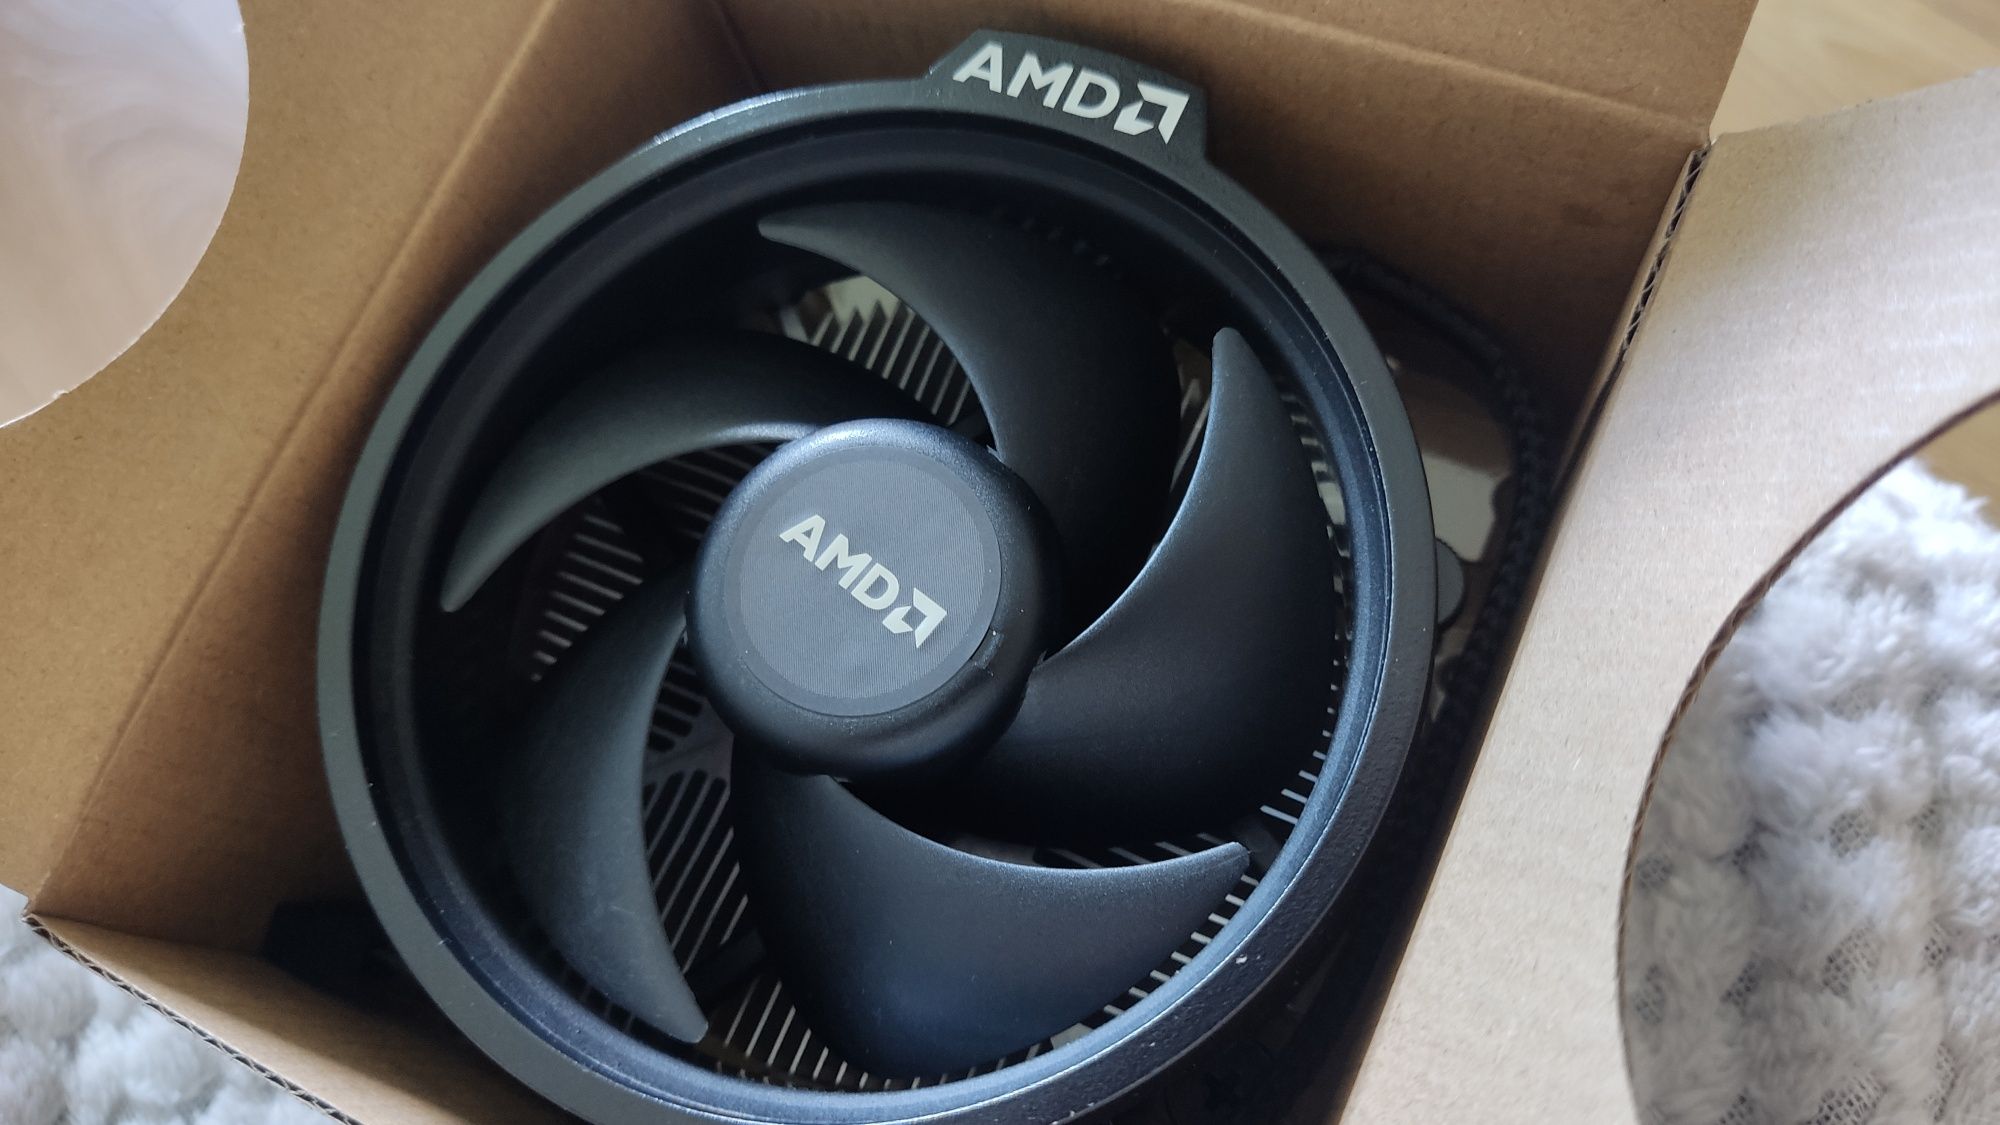 Nowe chłodzenie procesora AMD + okablowanie i wkładki antywibracyjne.